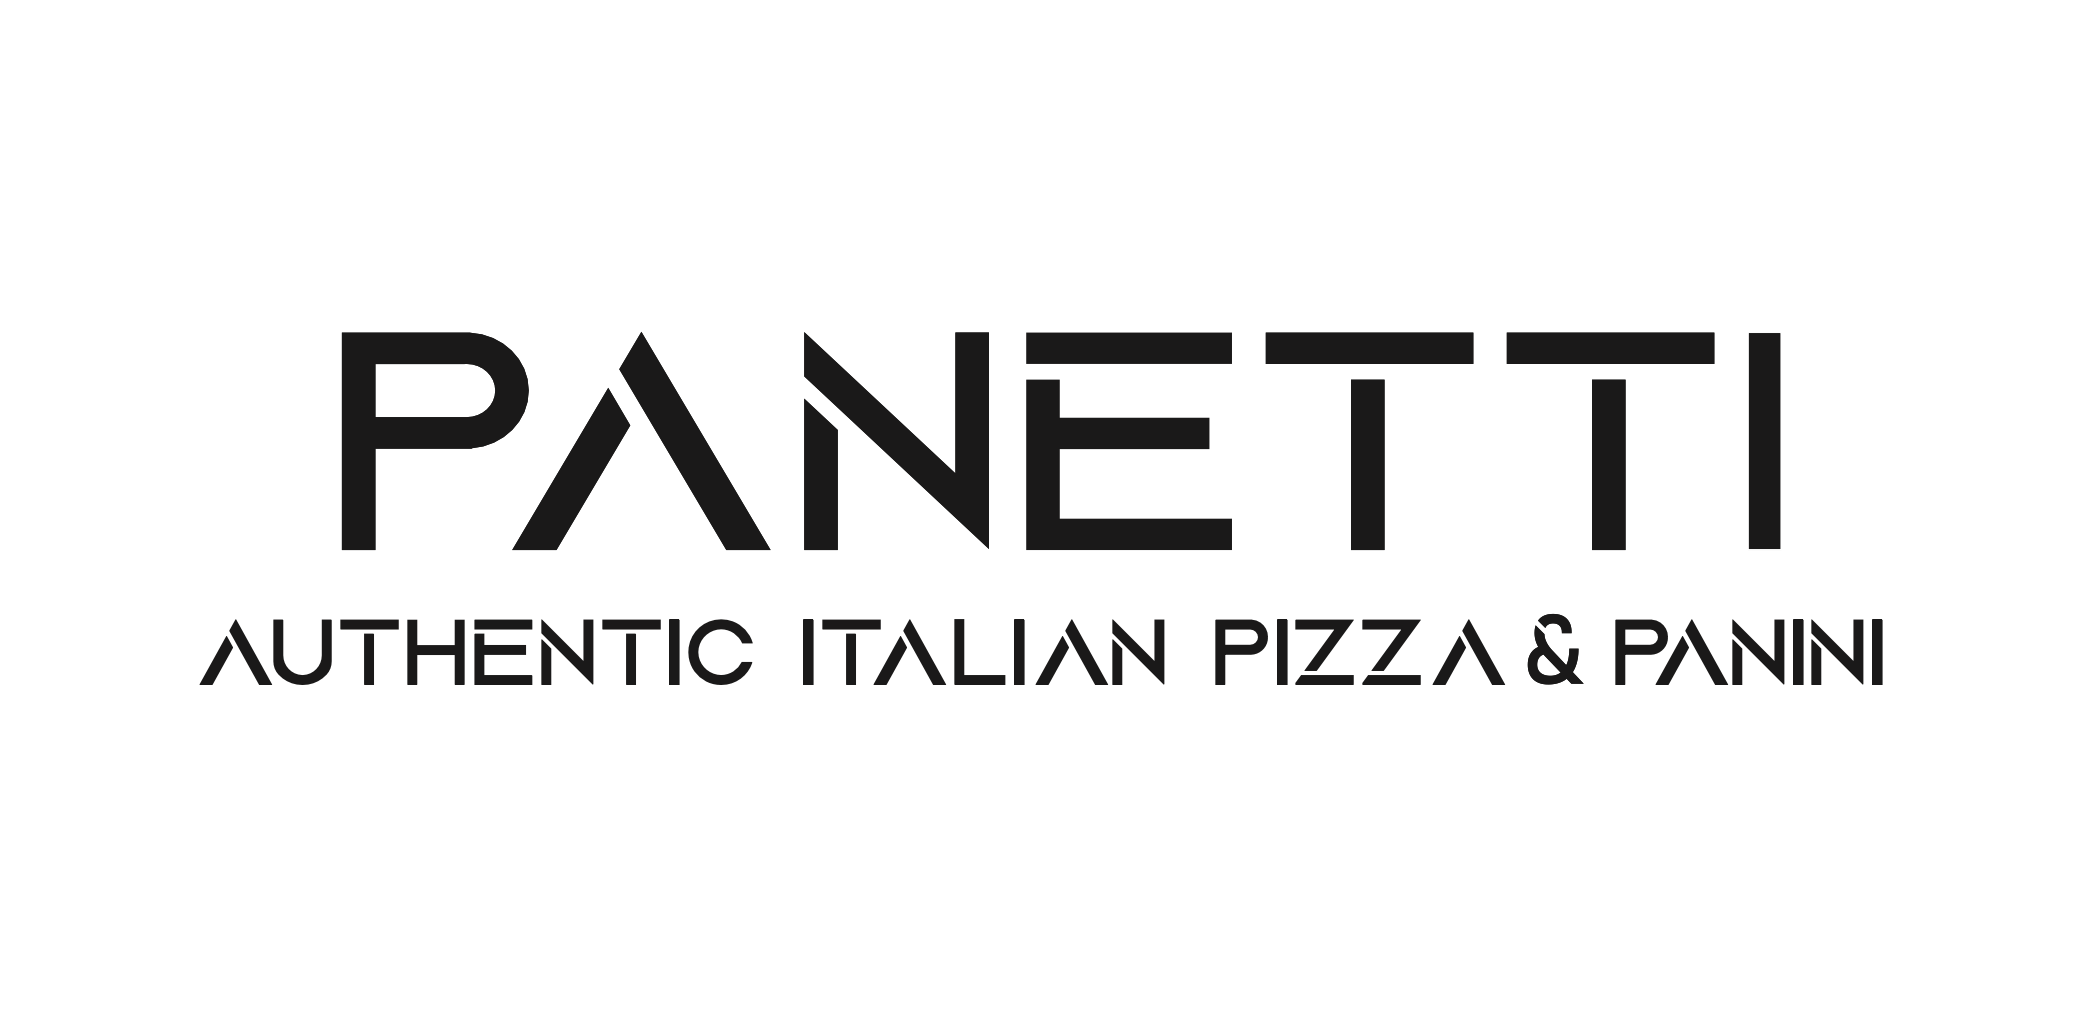 Panetti